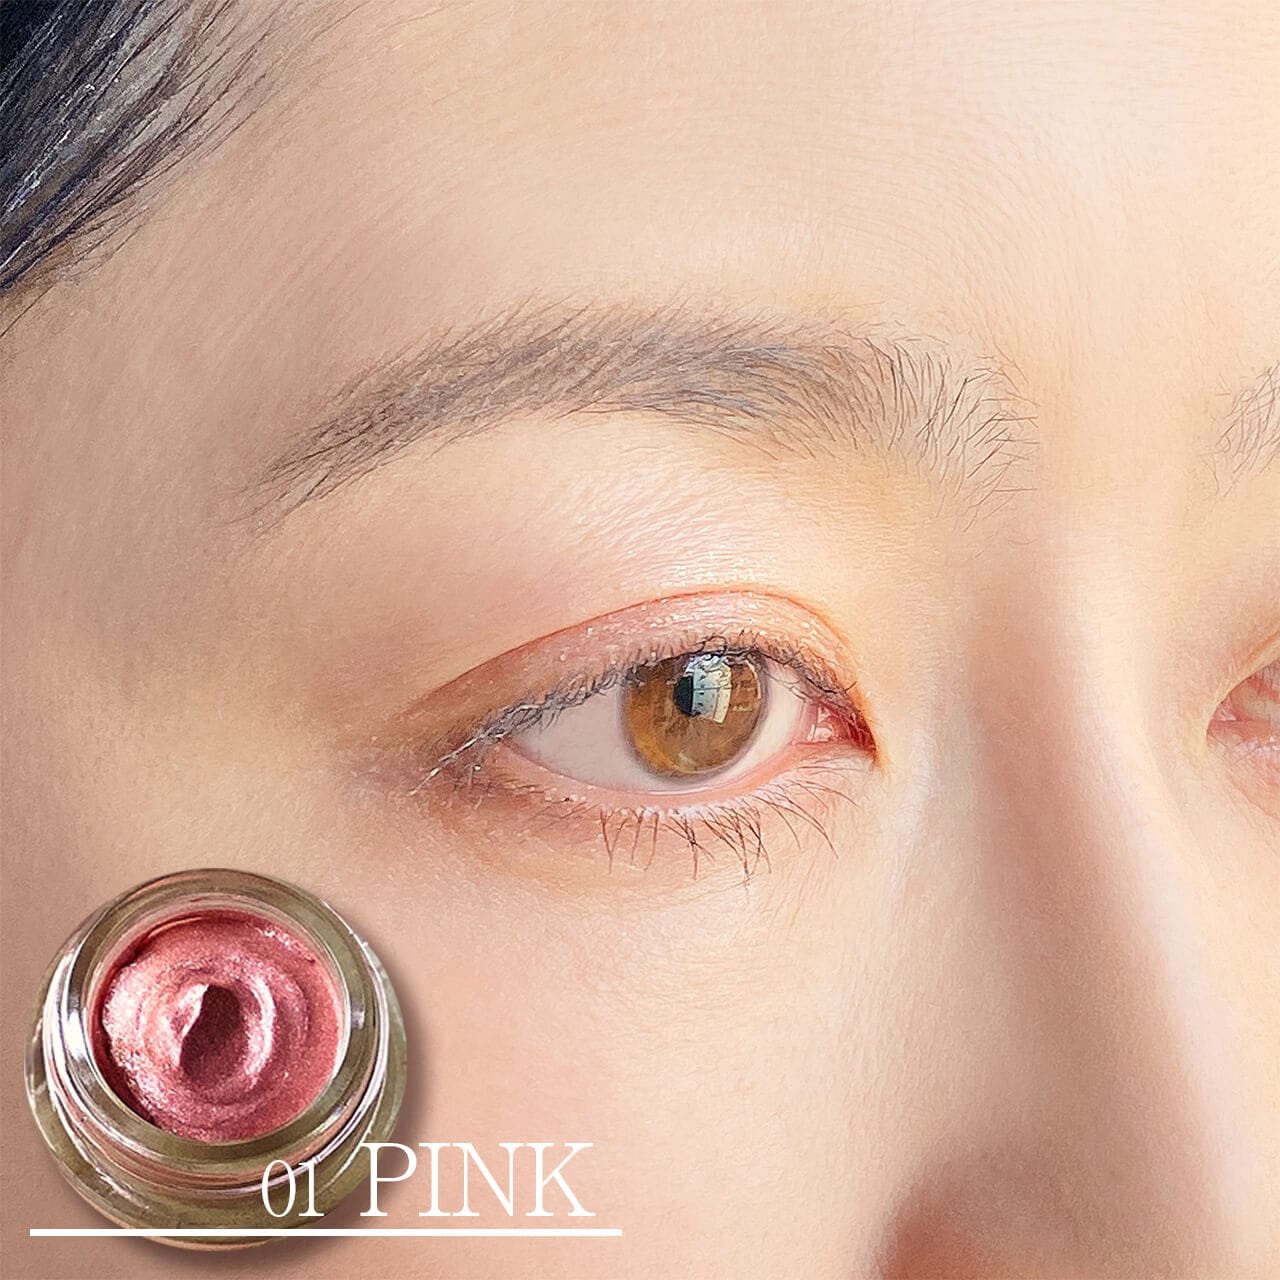 01 PINKはやわらかで優しげな目もとにしてくれるピンク。